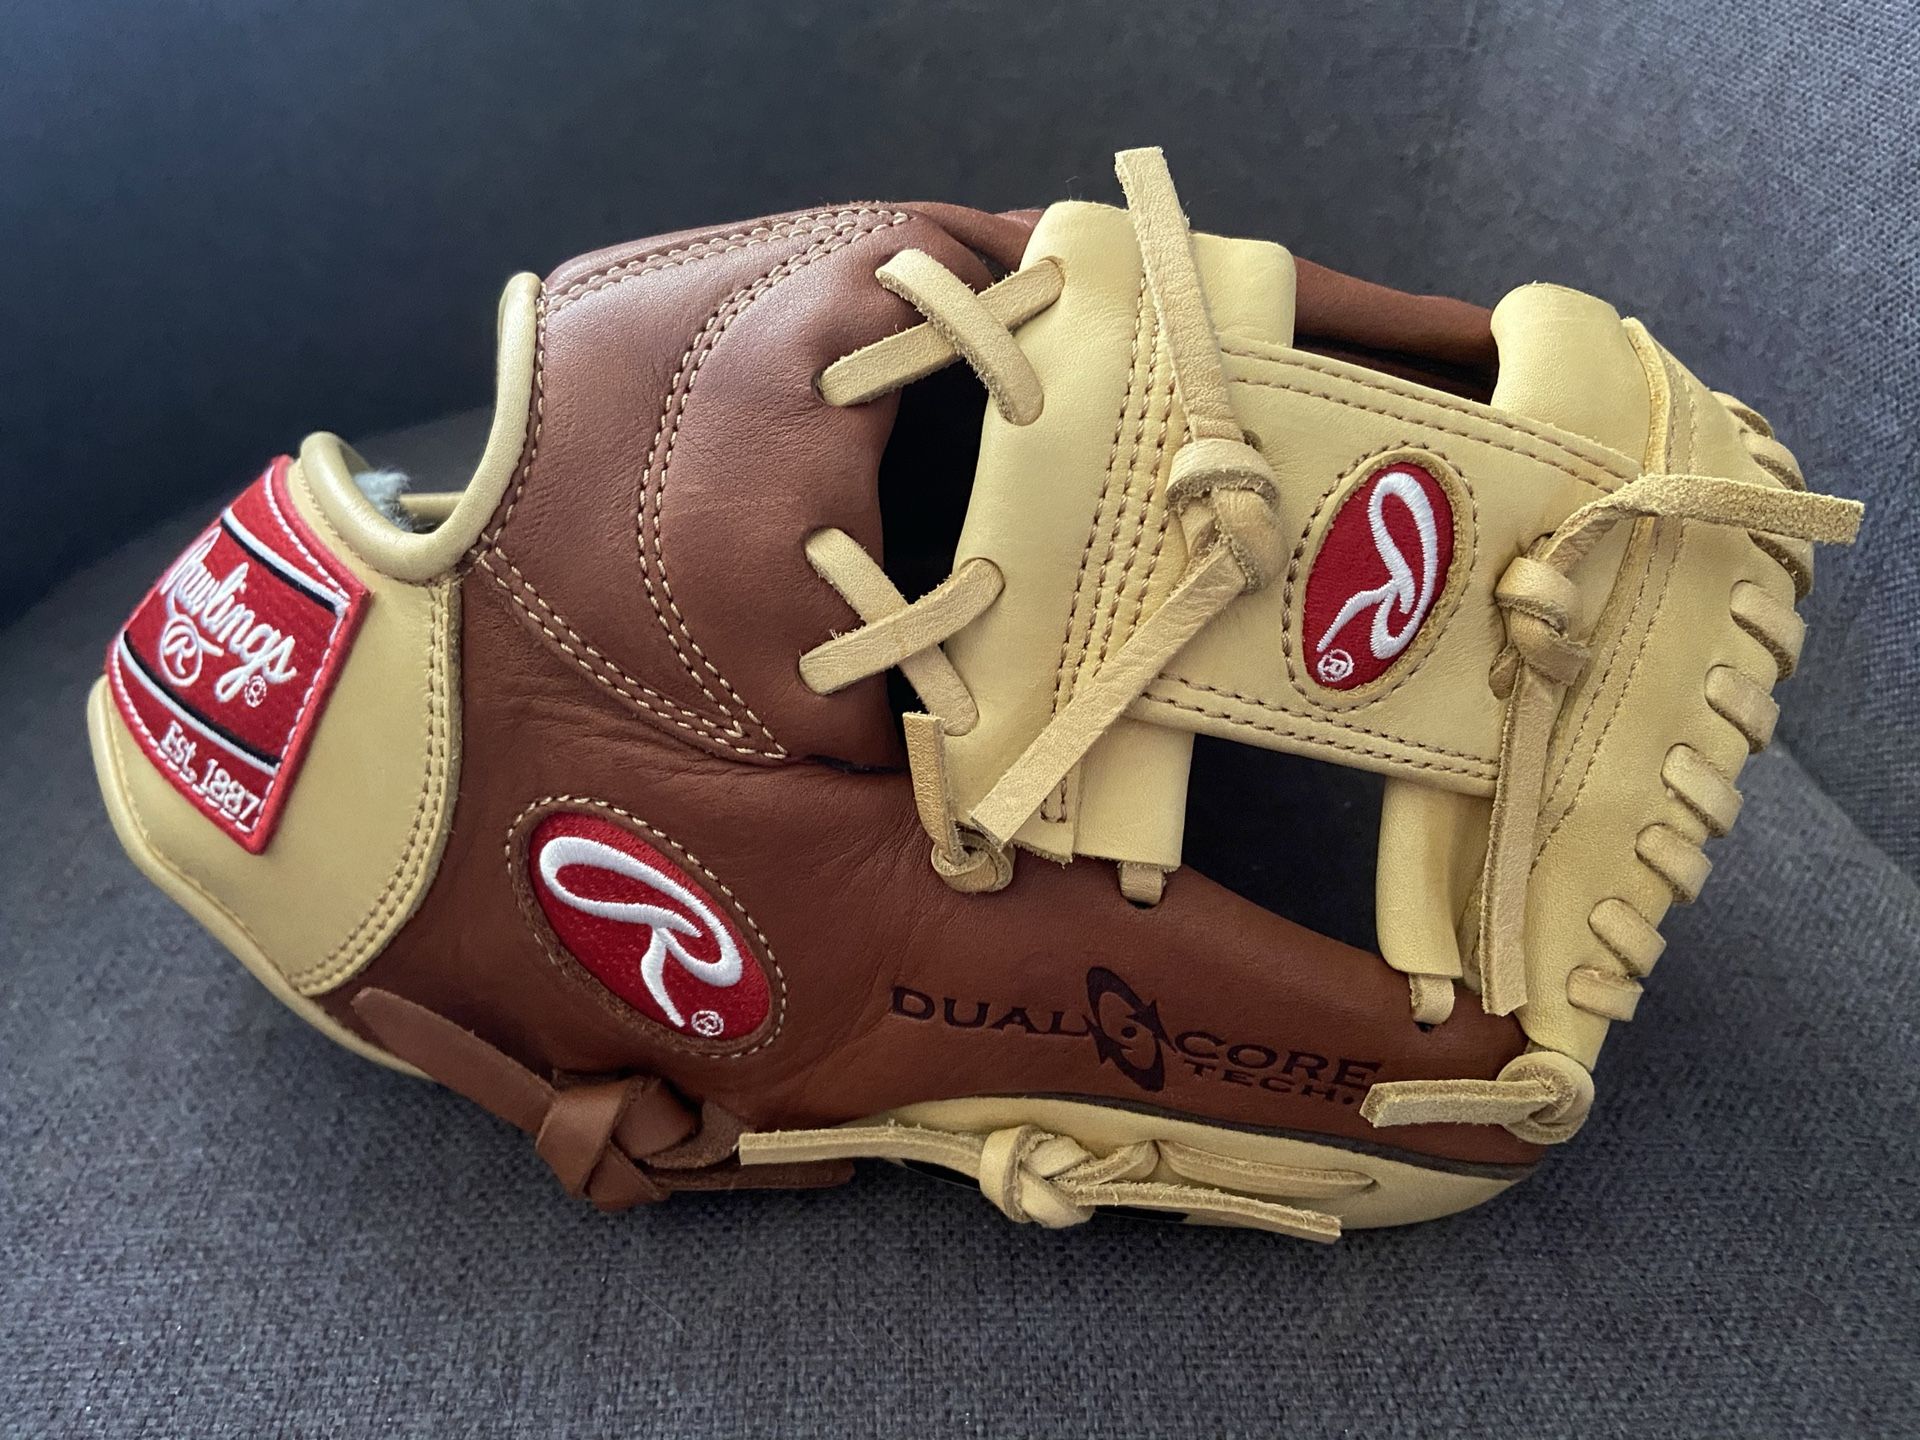 Rawlings Gold glove Elite 11.25” baseball glove